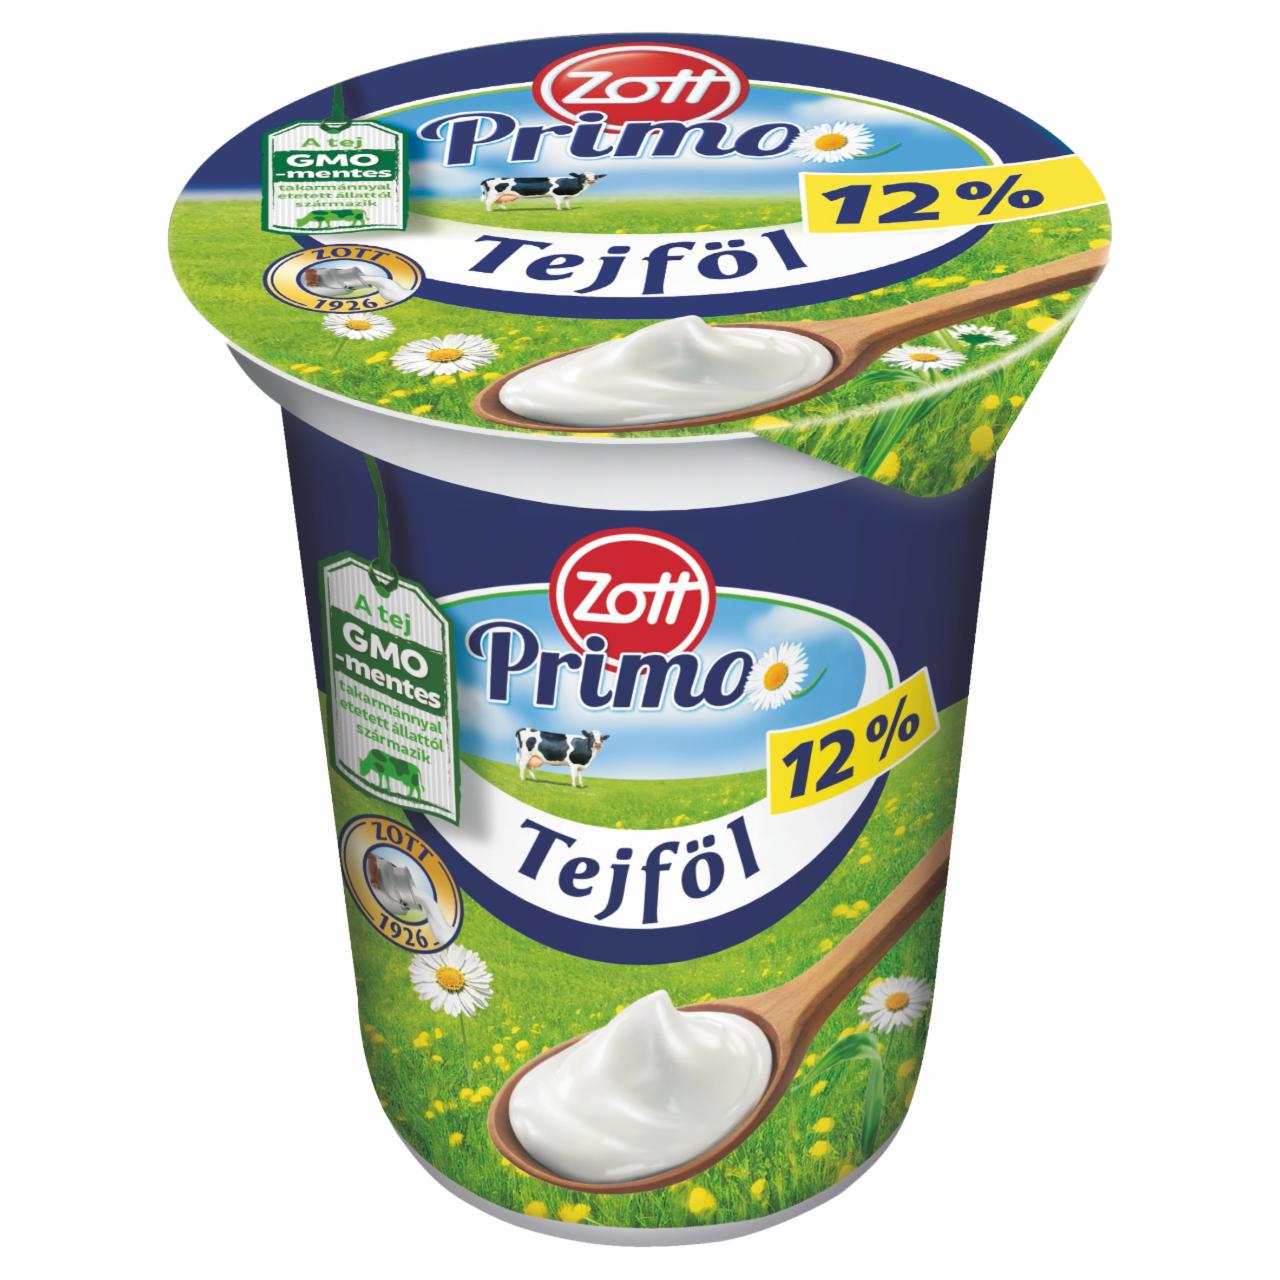 Képek - Zott Primo félzsíros tejföl 12% 330 g